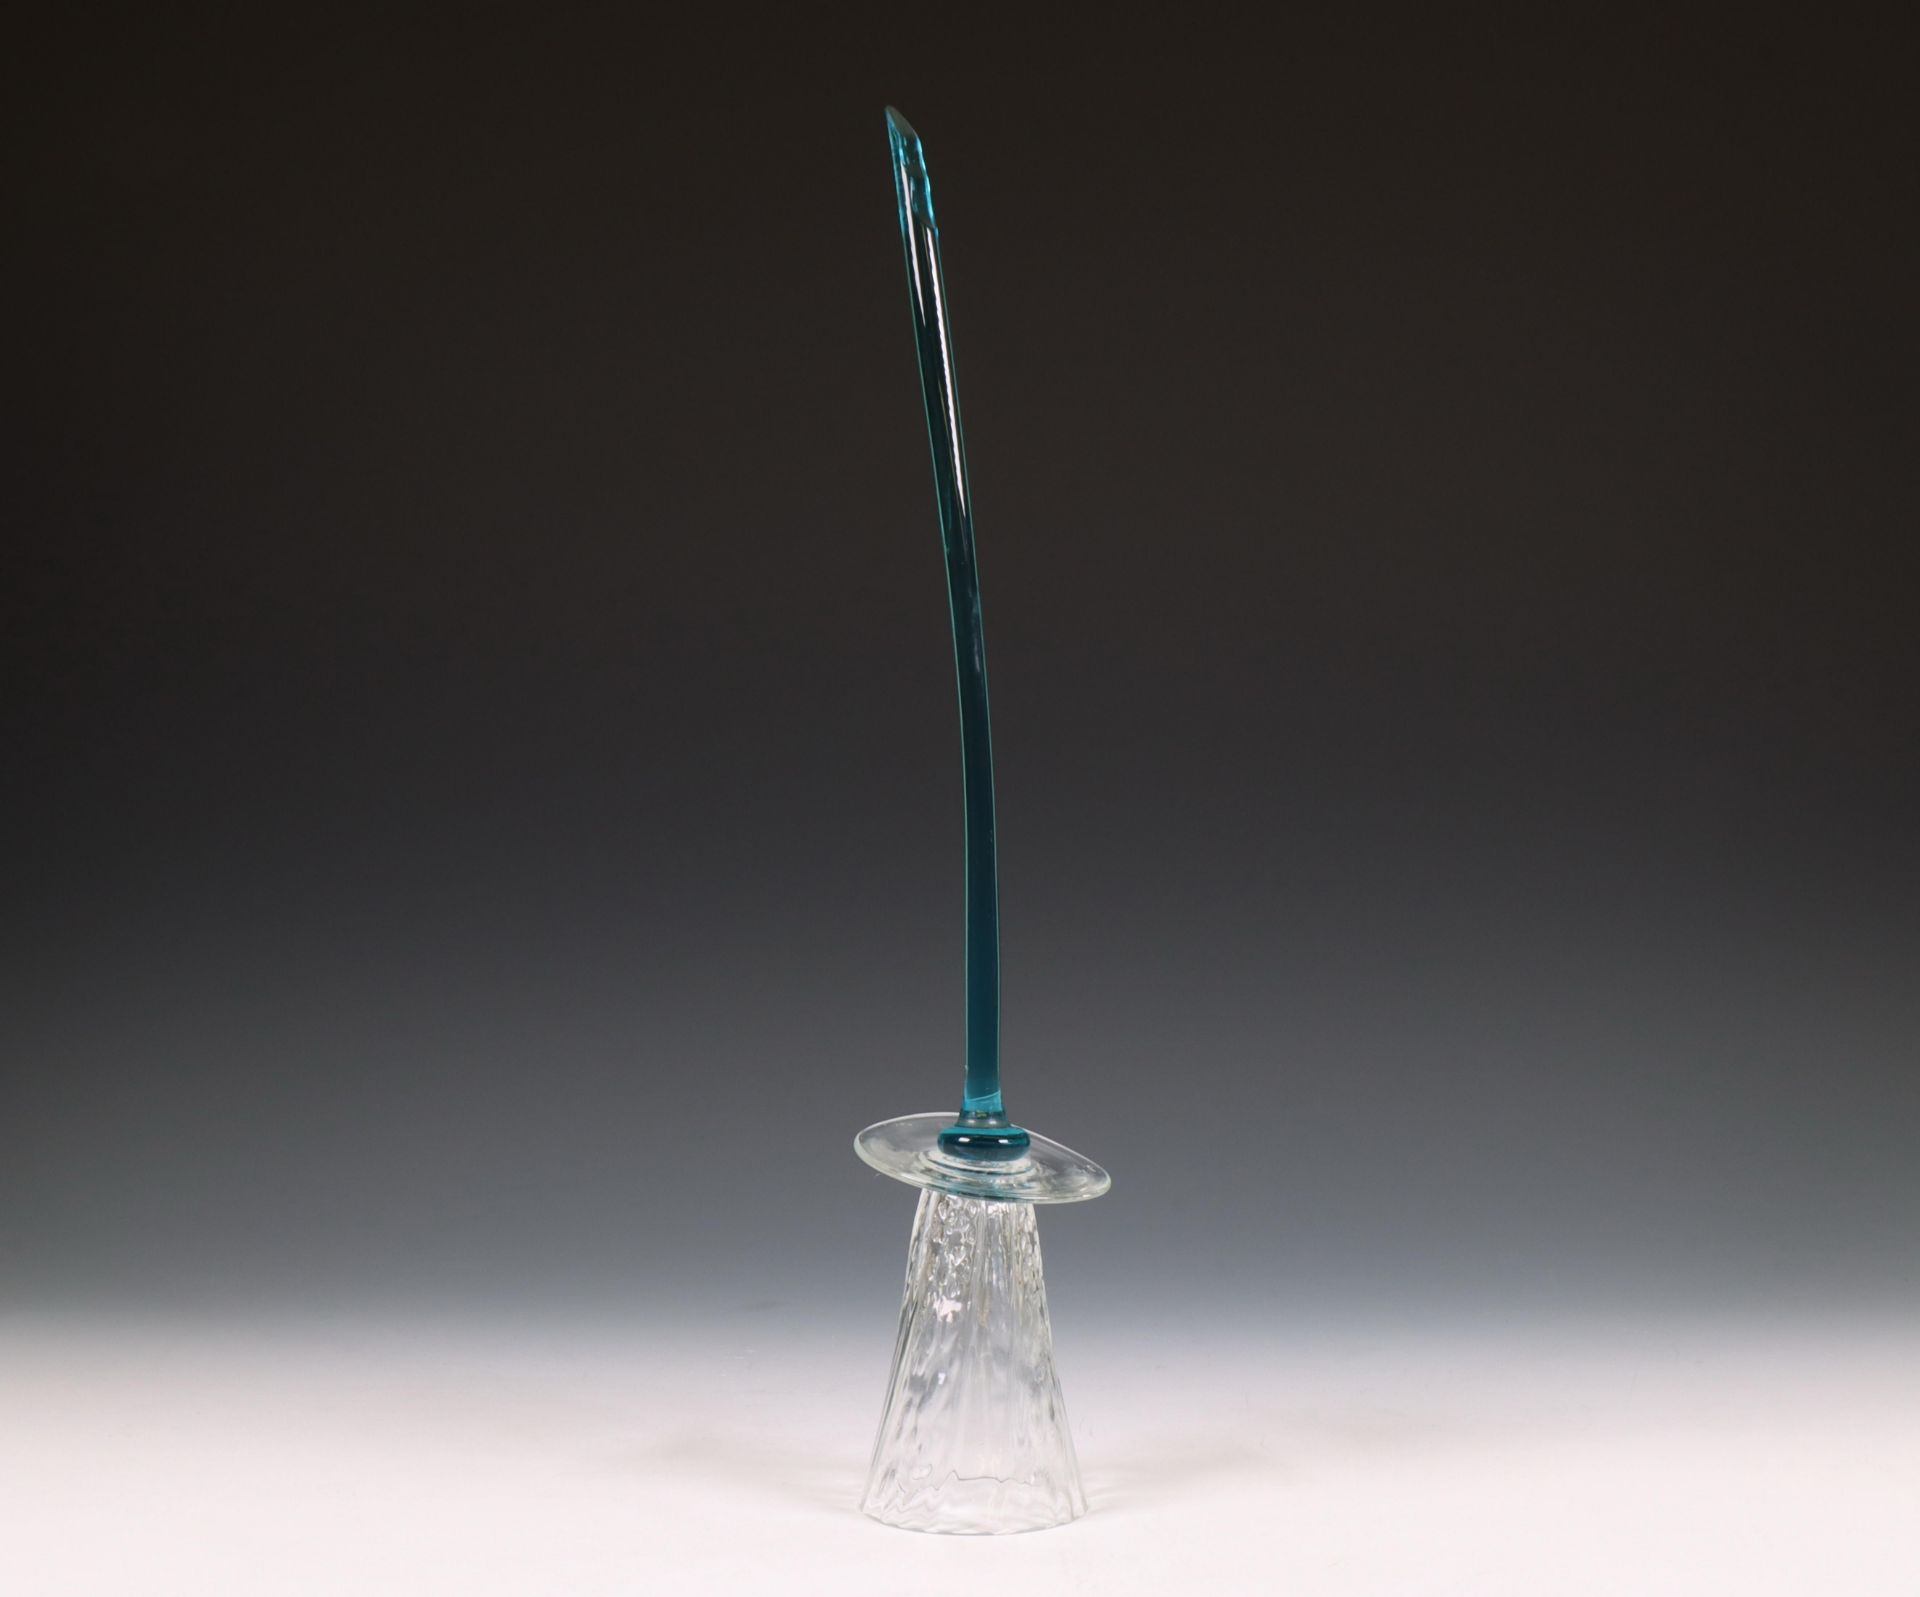 Borek Sipek (1949-2016), drinkglas in de vorm van bloem, ontwerp 1995, uitvoering Driade - Image 2 of 2